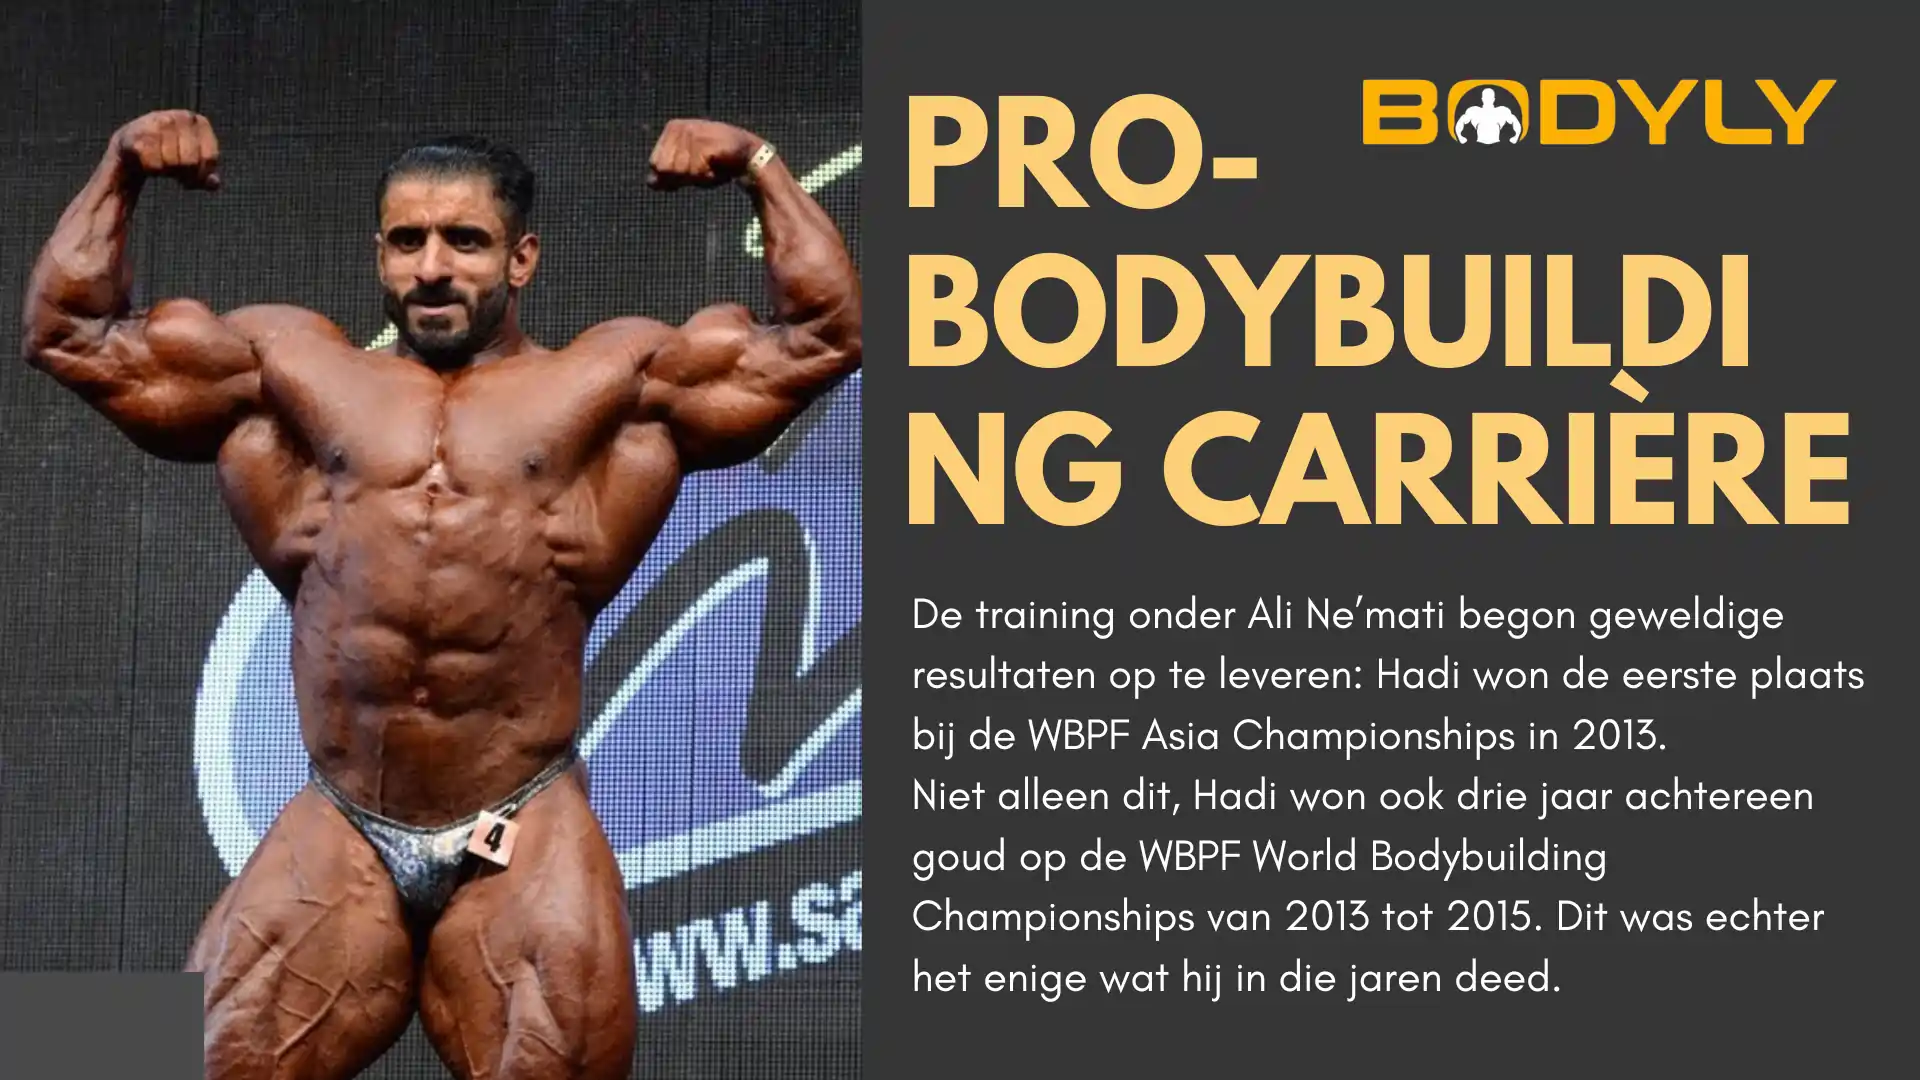 Pro-Bodybuilding carrière